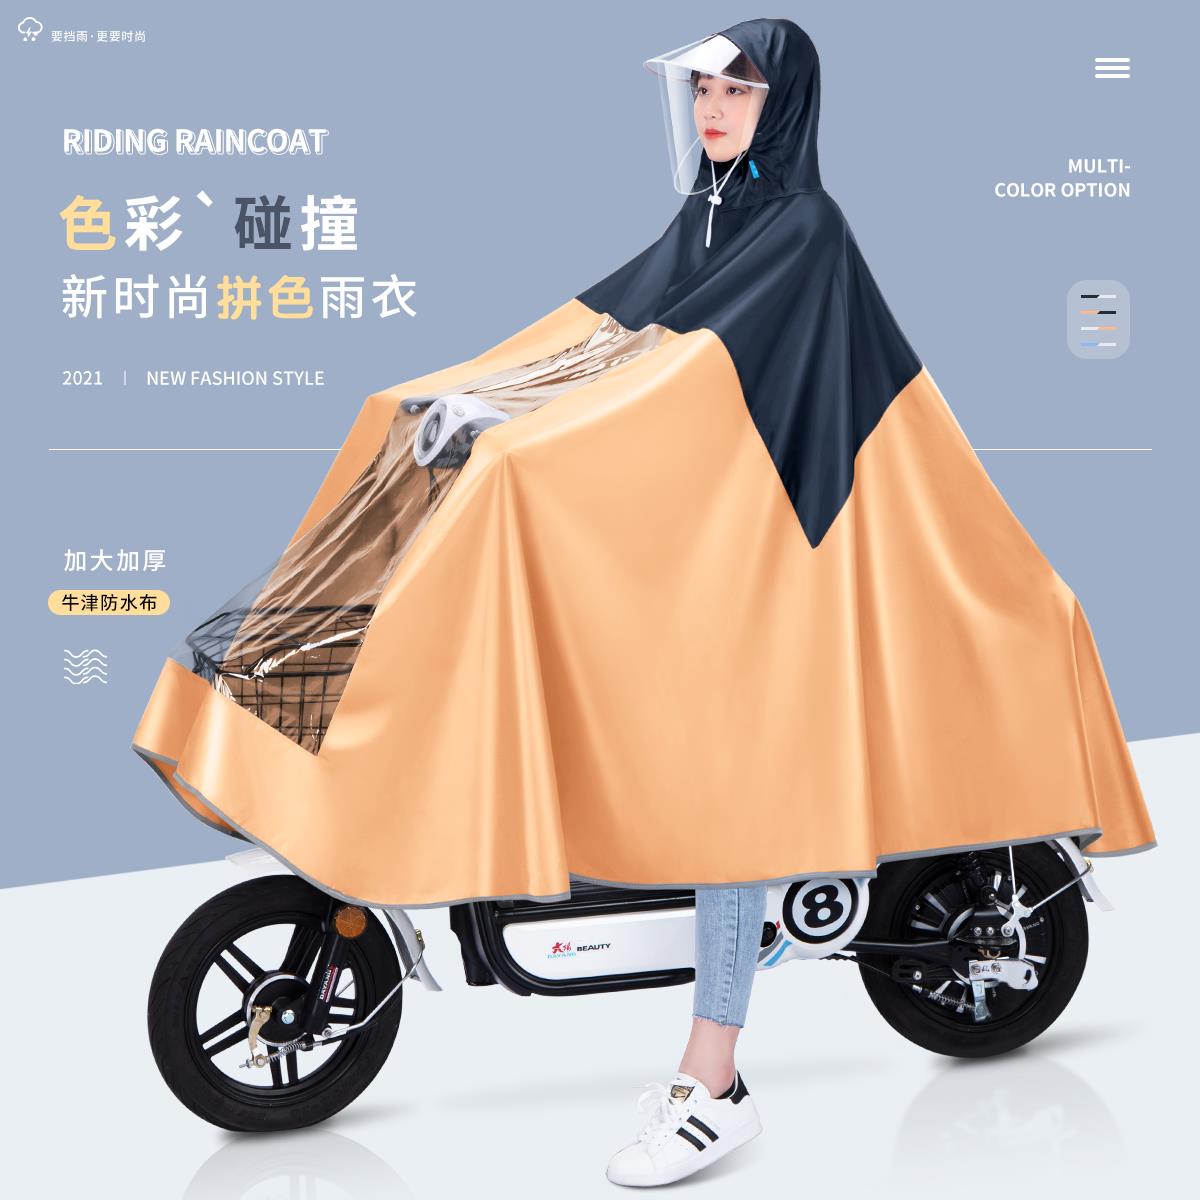 2021新款雨衣雅迪愛瑪電動電瓶車單人時尚長款全身防暴雨騎行雨披